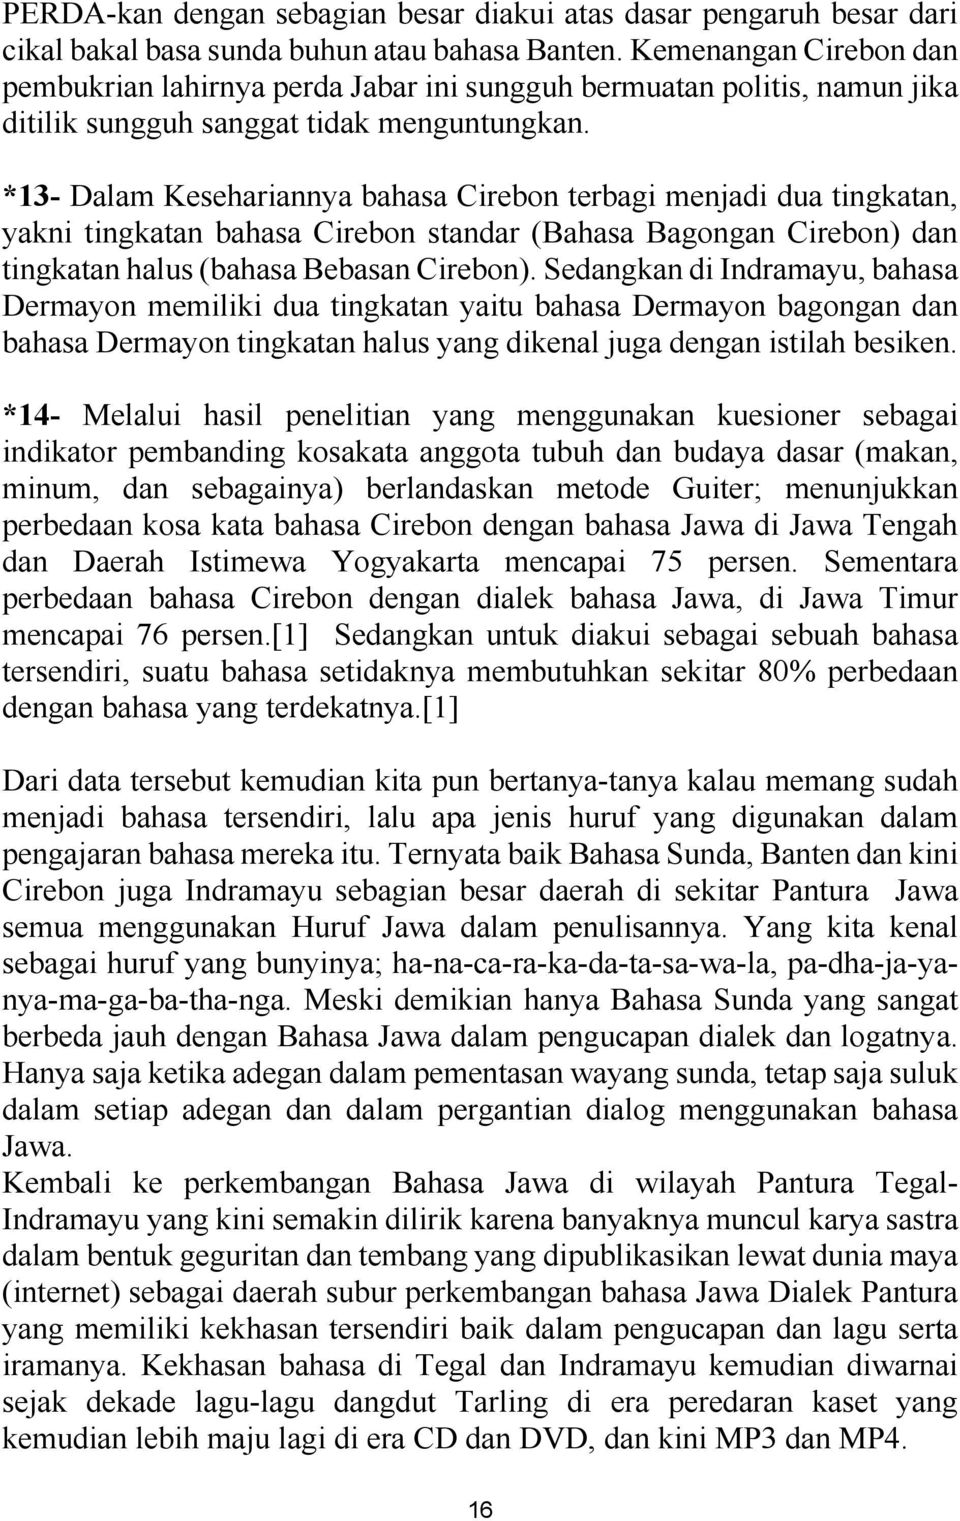 *13- Dalam Kesehariannya bahasa Cirebon terbagi menjadi dua tingkatan, yakni tingkatan bahasa Cirebon standar (Bahasa Bagongan Cirebon) dan tingkatan halus (bahasa Bebasan Cirebon).